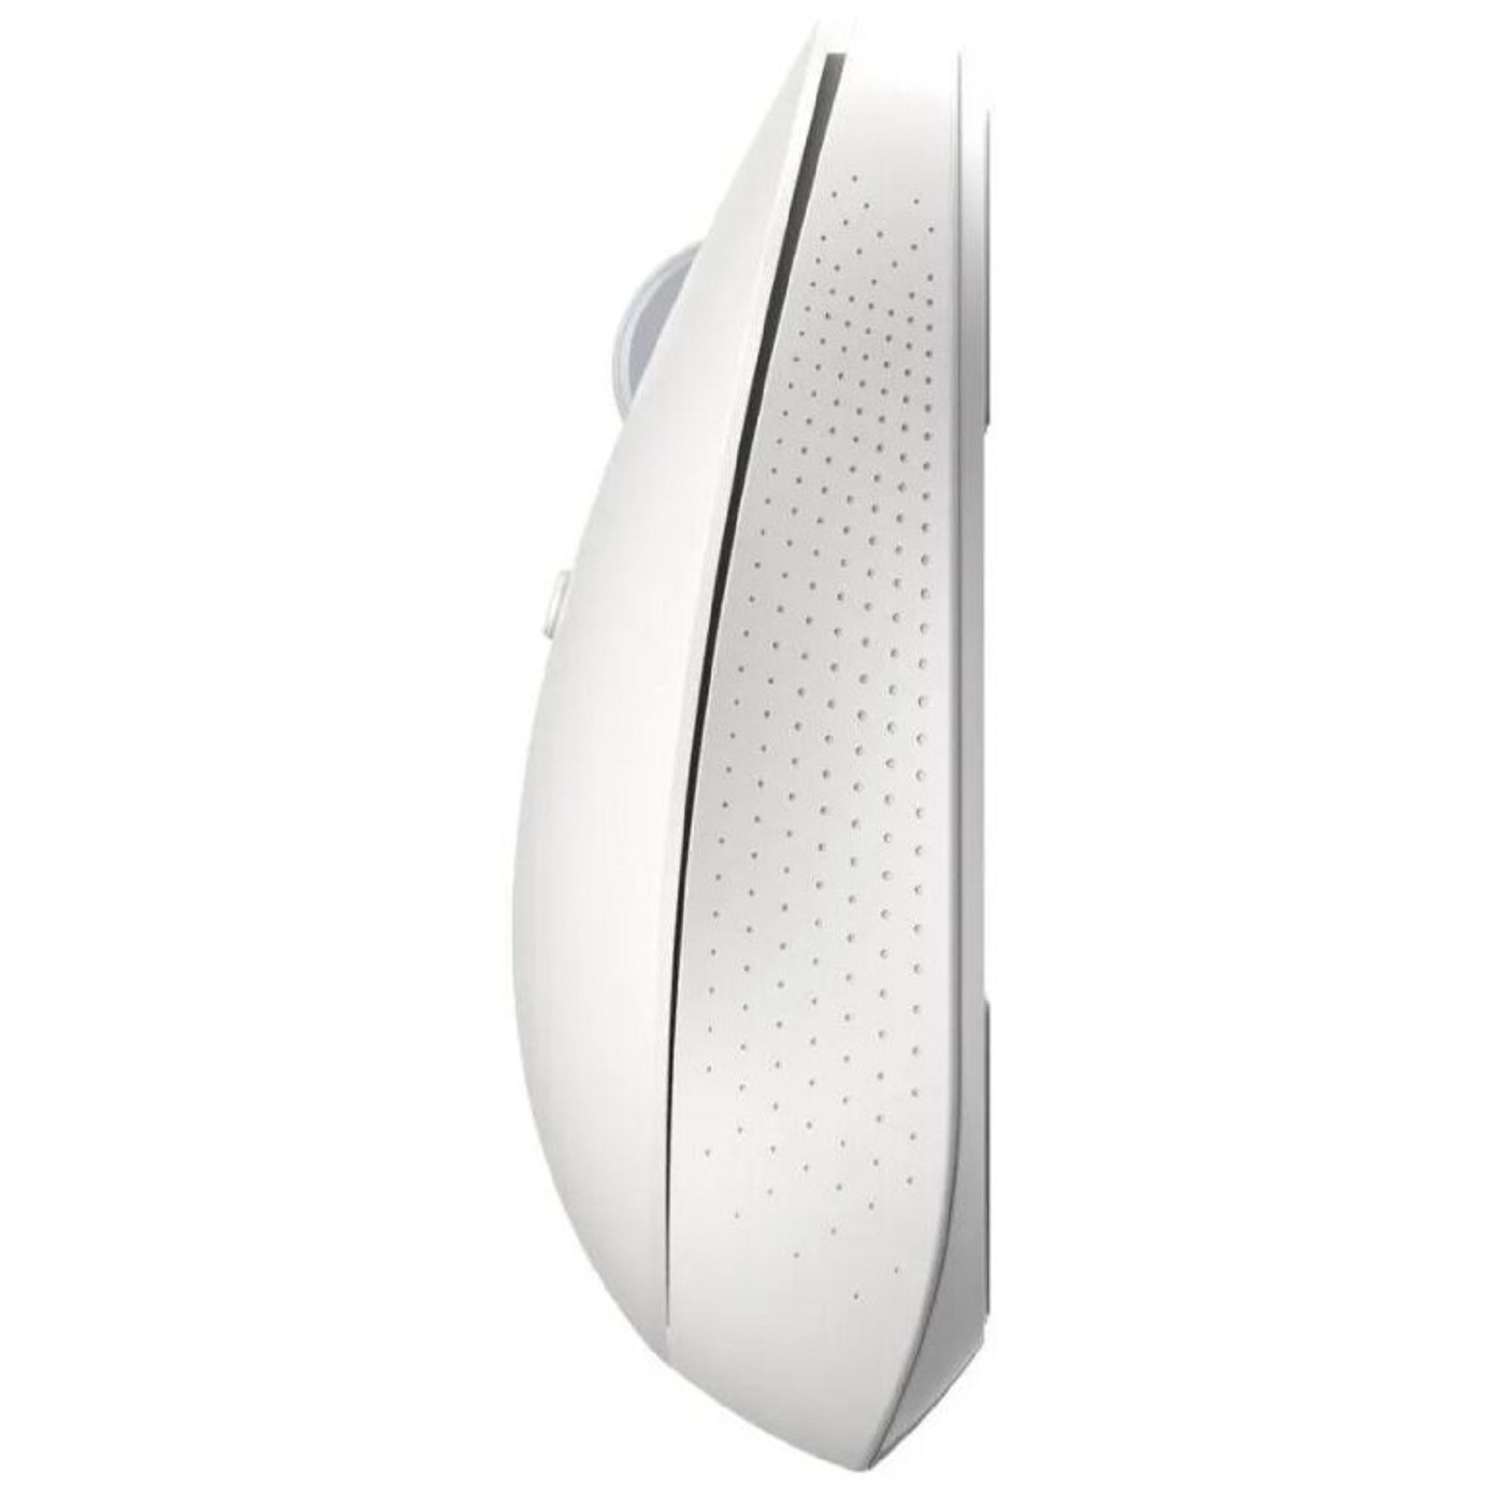 Мышь XIAOMI Mi Dual Mode Wireless Mouse Silent Edition беспроводная 1300 dpi usb белая - фото 4